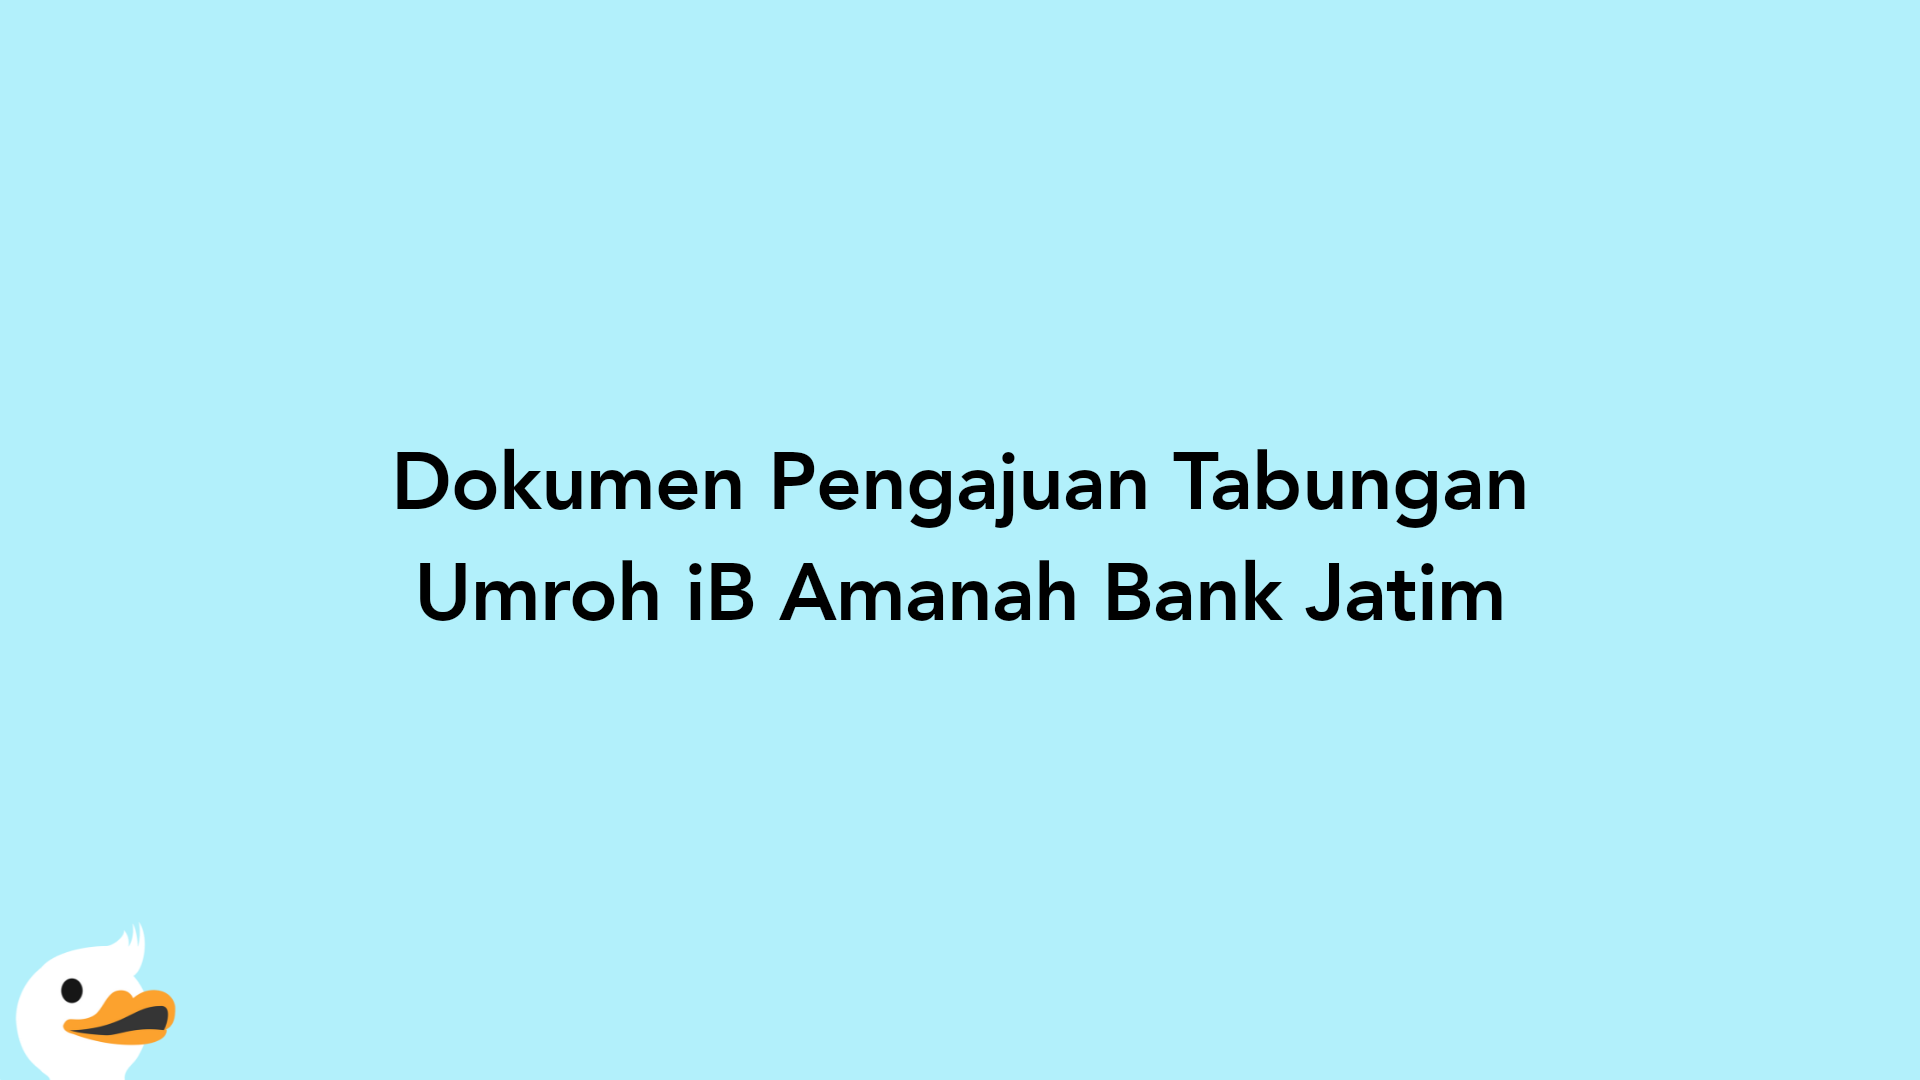 Dokumen Pengajuan Tabungan Umroh iB Amanah Bank Jatim